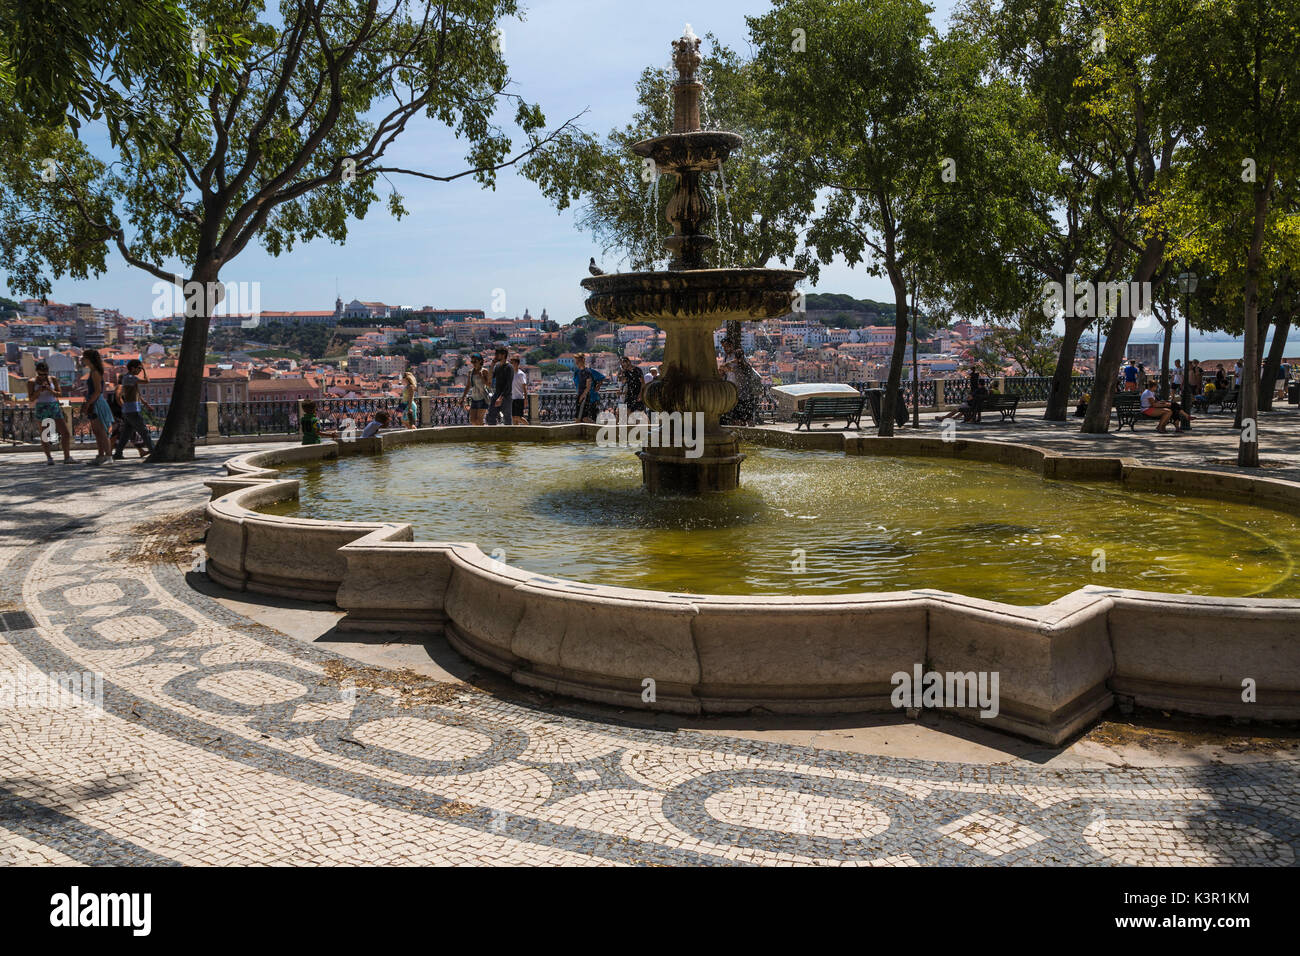 Fontaine et place avec carreaux décoratifs sur une terrasse au Mirador de San Pedro de Alcántara Bairro Alto Lisbonne Portugal Europe Banque D'Images